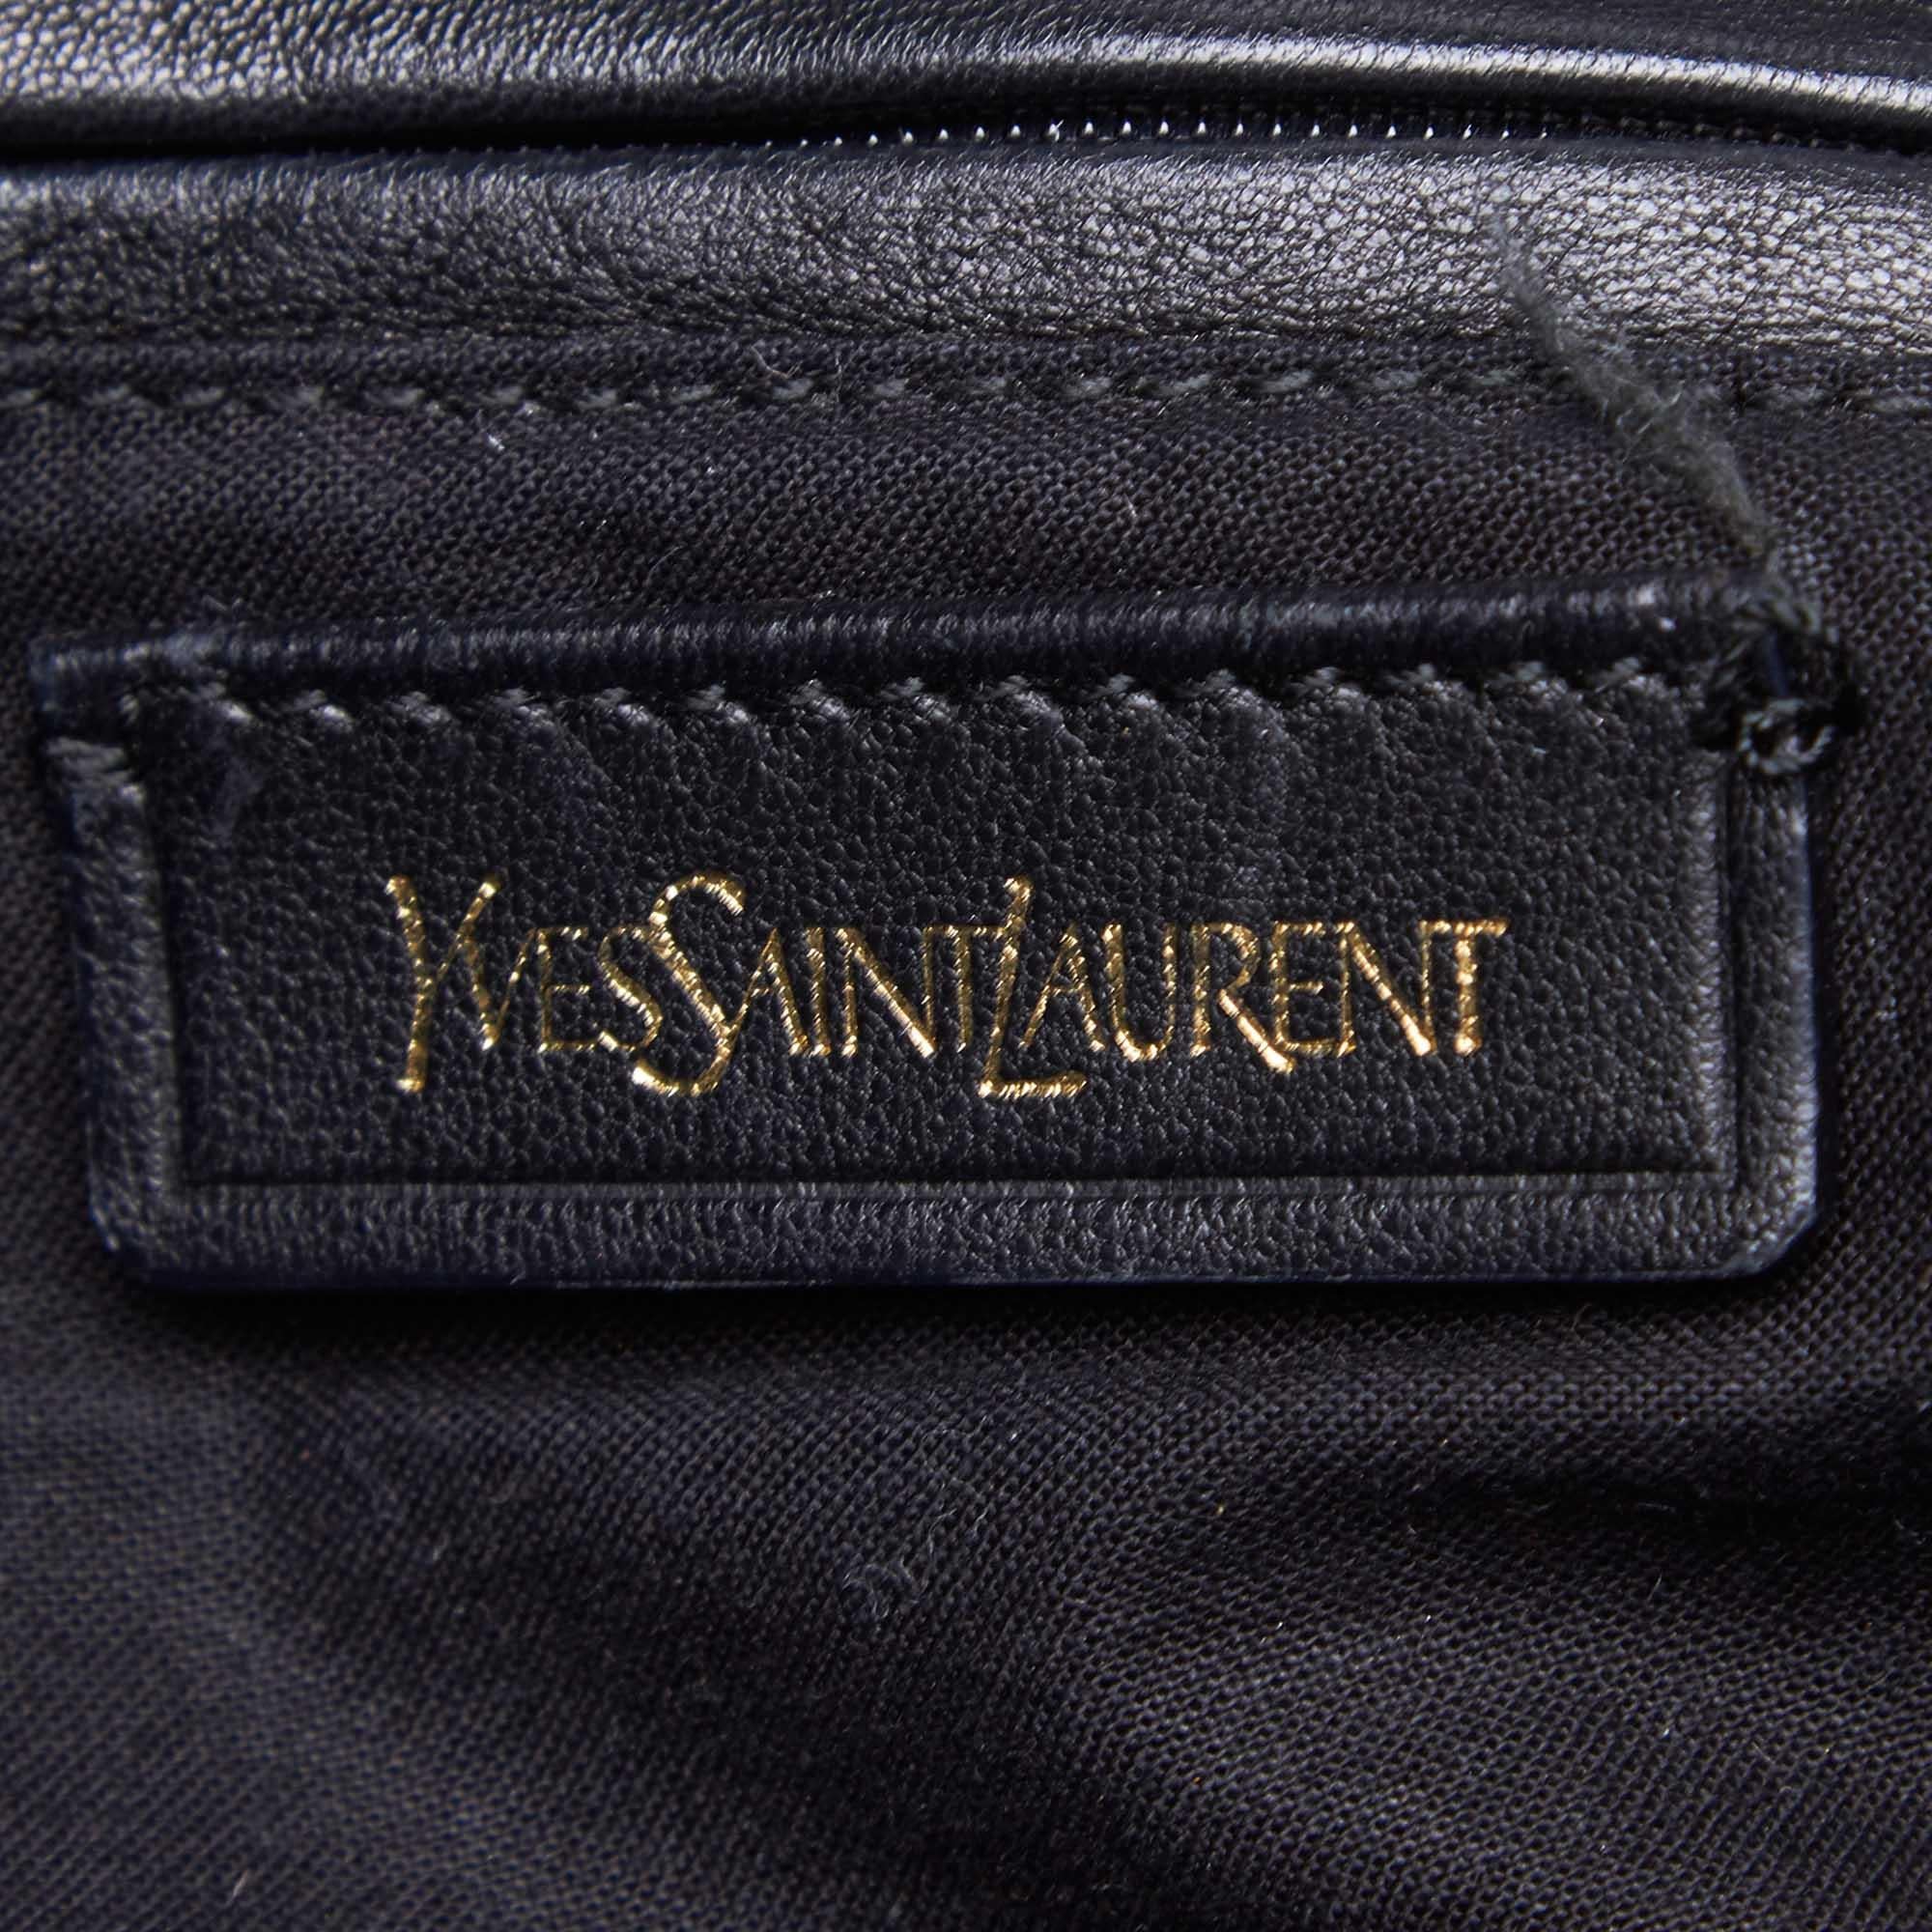 Vintage Authentic YSL Black Patent Leather Belle de Jour Tote Bag France LARGE  For Sale 2